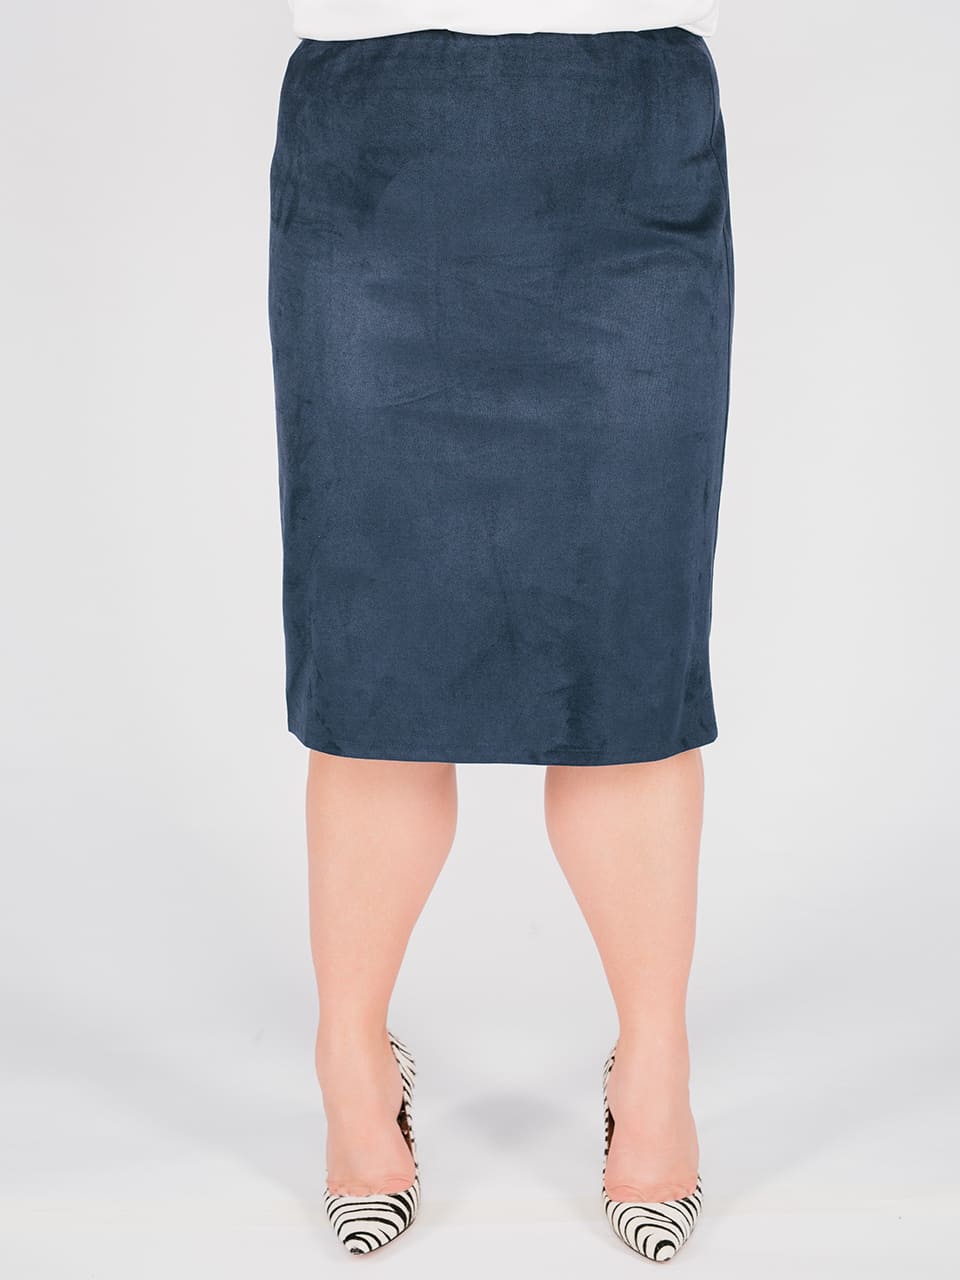 Классическая прямая юбка на резинке и шлицей, темно-синяя